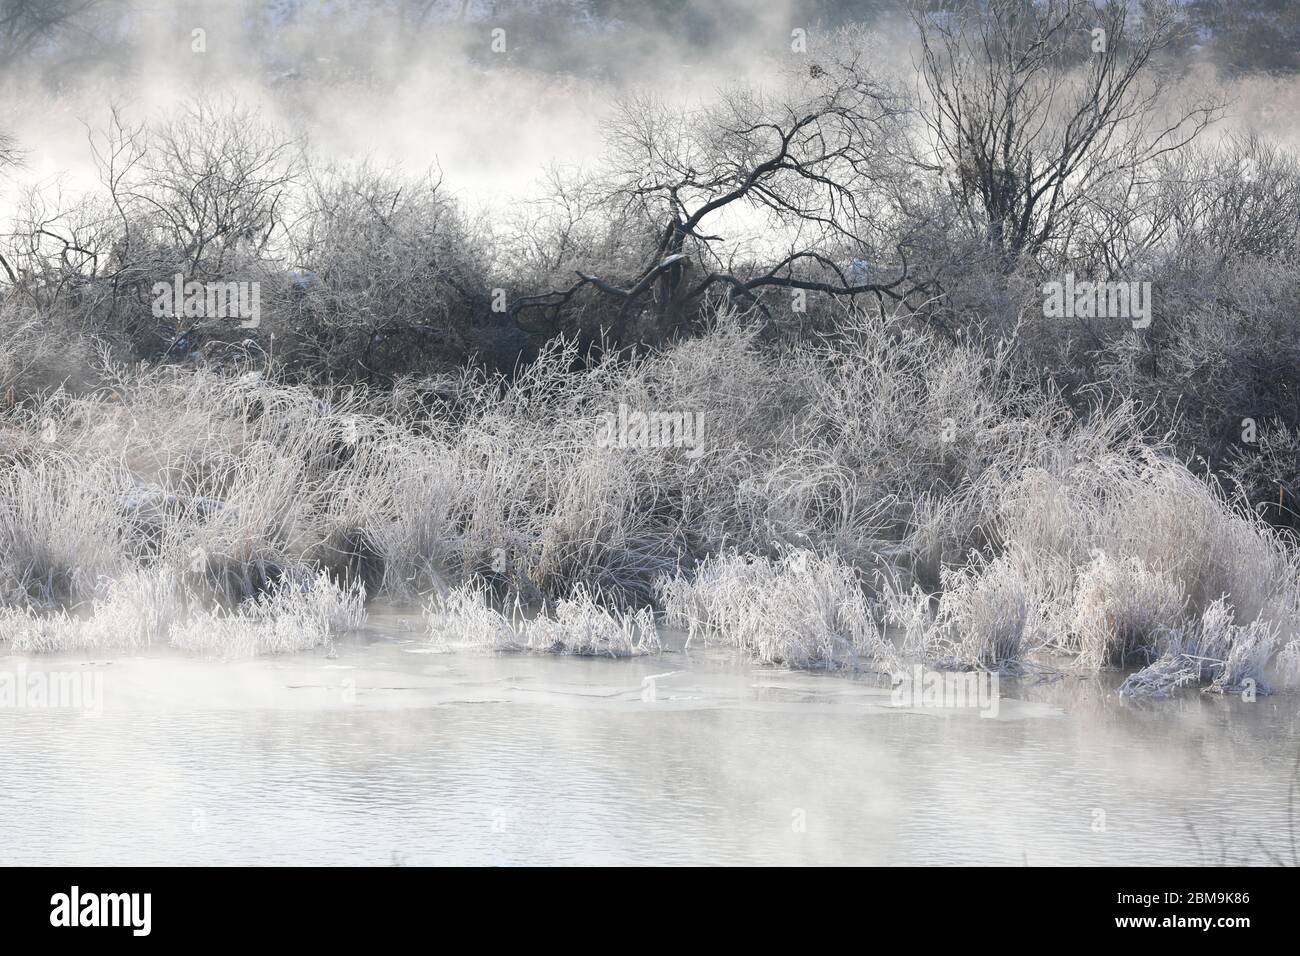 Alberi e canne sono ricoperti di neve, e il fiume ha nebbia d'acqua. Fiume Soyang, Chuncheon City, Corea Foto Stock